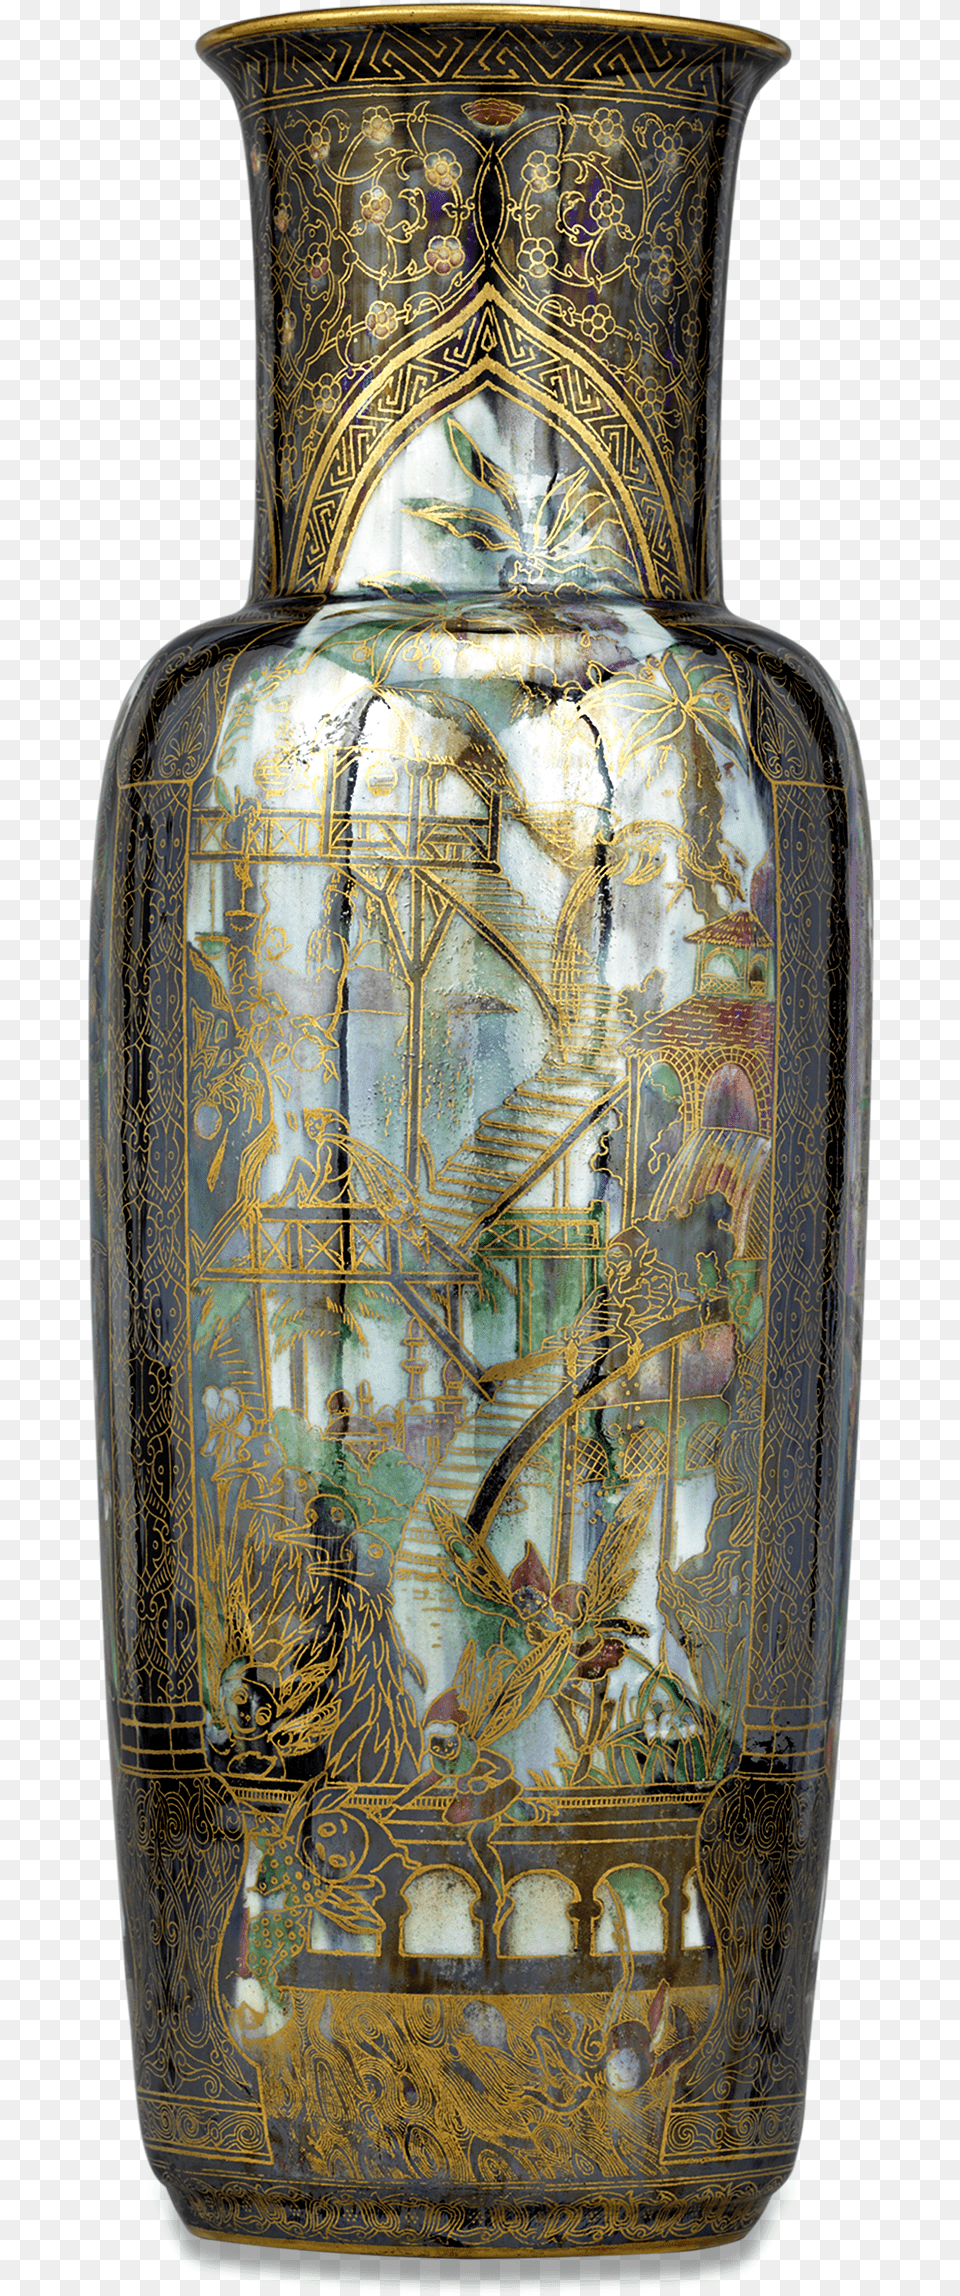 Fairyland Lustre Pillar Vase By Wedgwood Vase, Porcelain, Art, Jar, Pottery Png Image